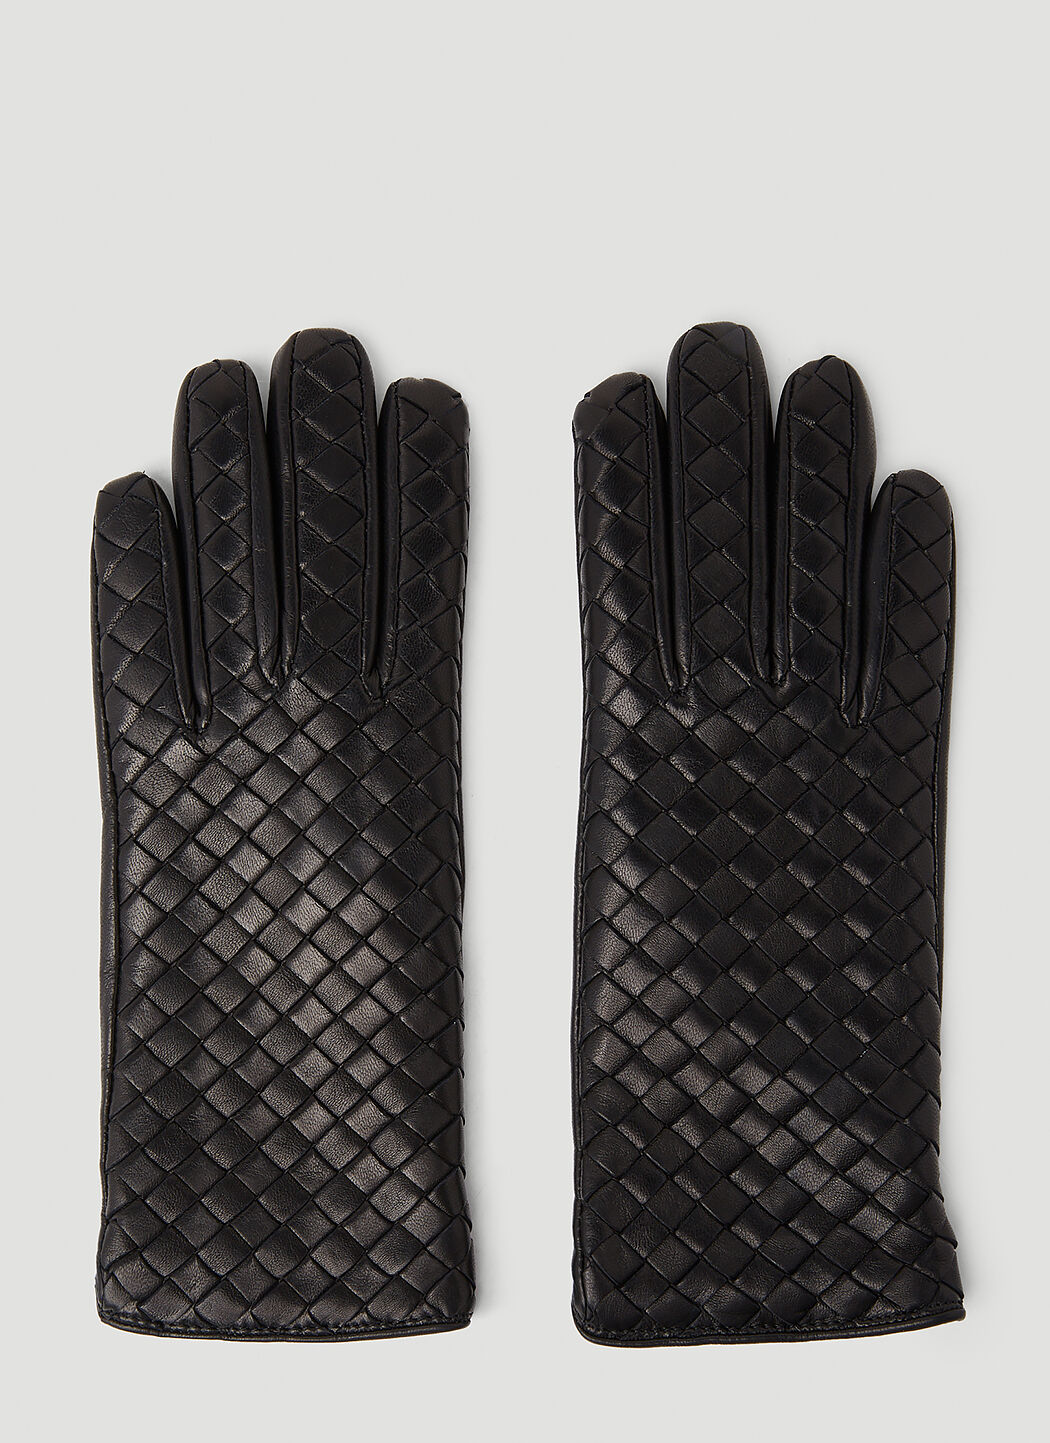 Marni Intrecciato Leather Gloves White mni0255039